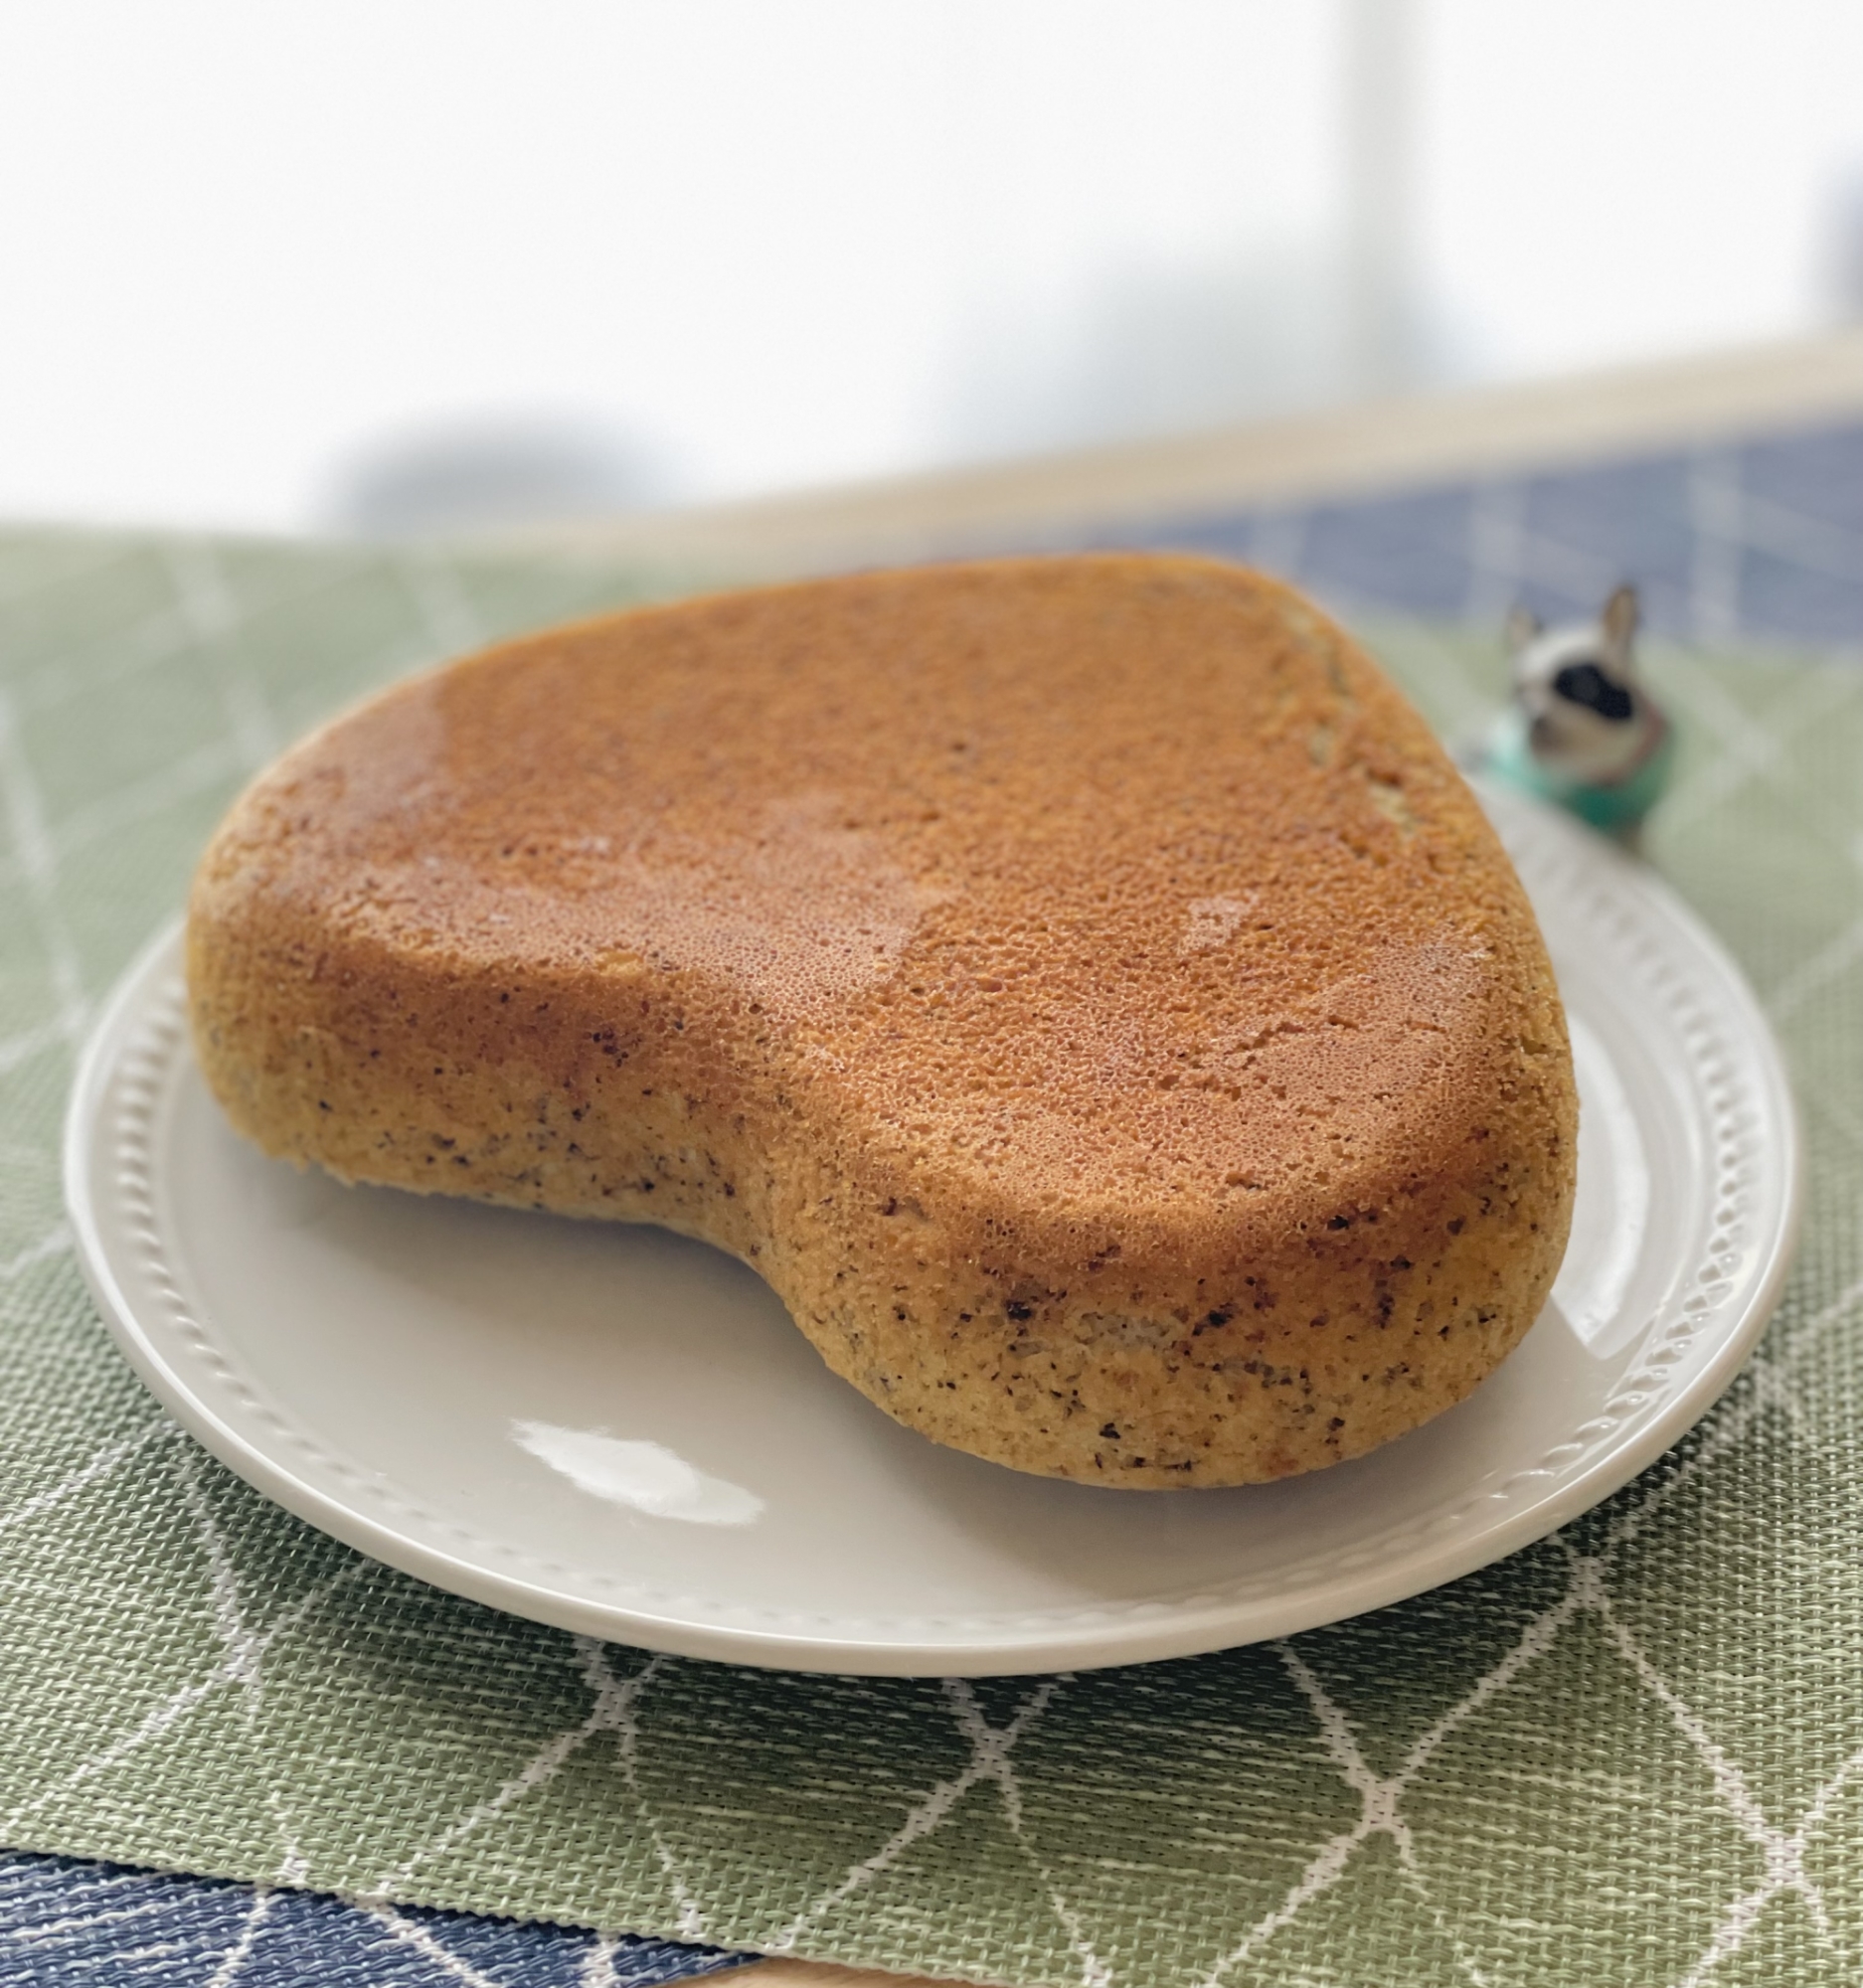 炊飯器de胡麻入り米粉ケーキ♡